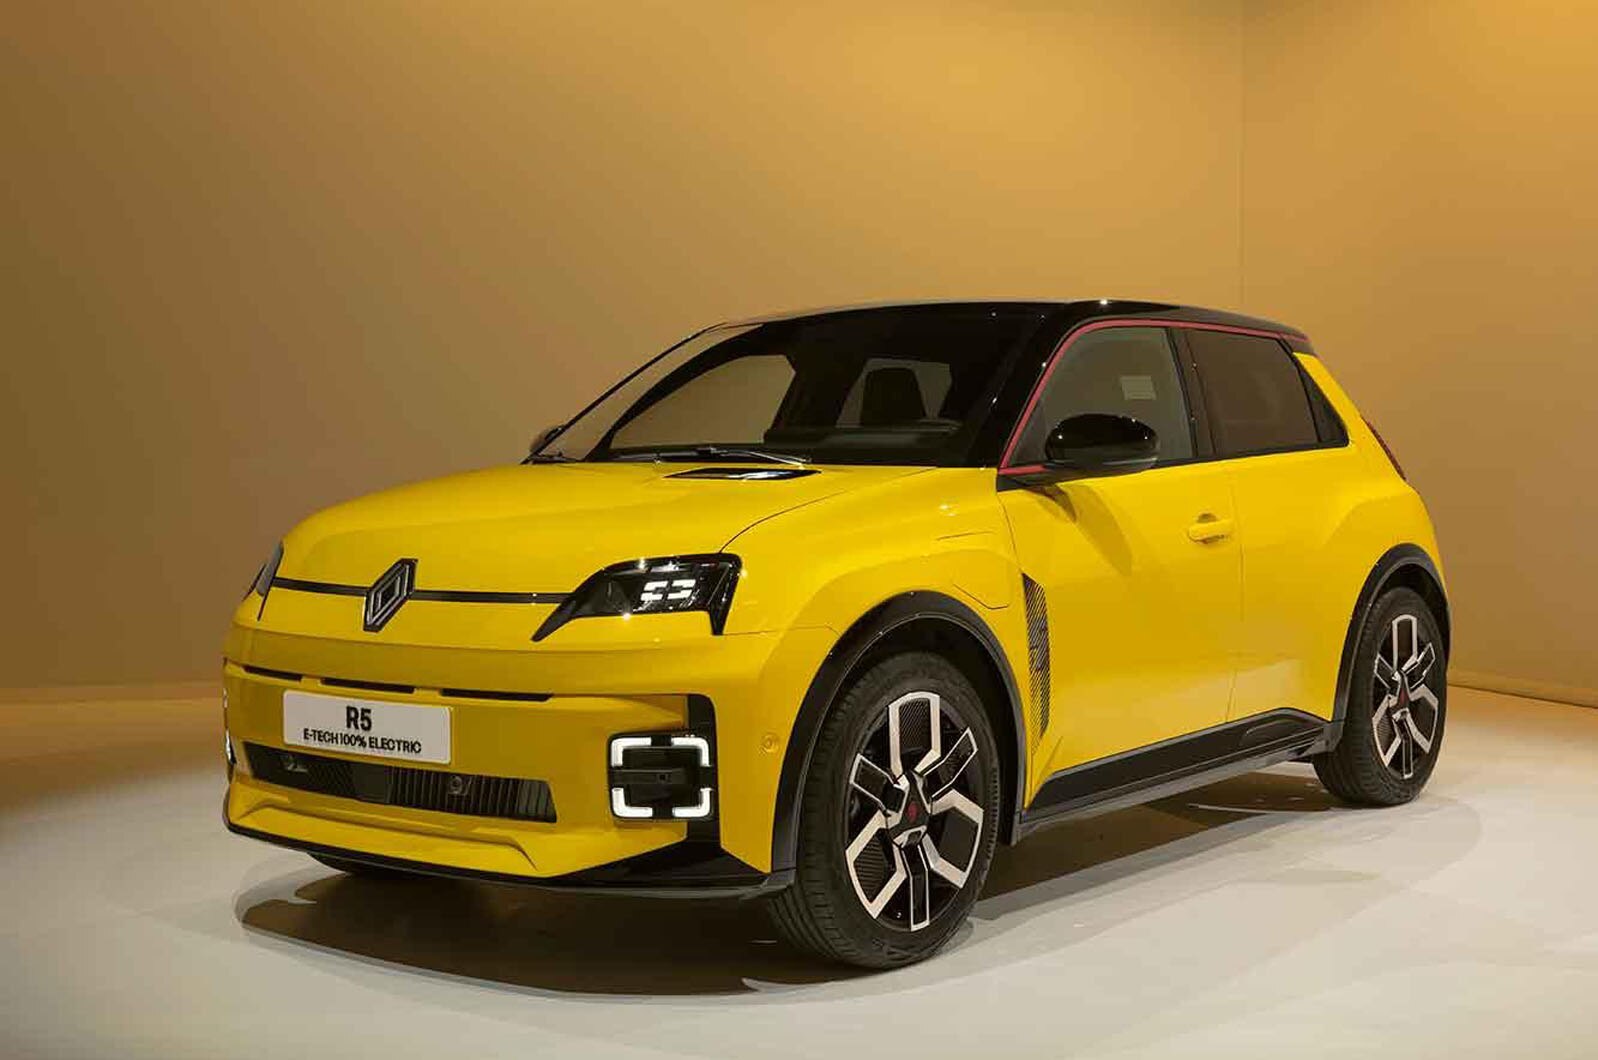 Renault 5 Electric Car: रेनॉ ने पेश की अपनी ‘5' इलेक्ट्रिक हैचबैक, मिलेगी 400 किमी की रेंज